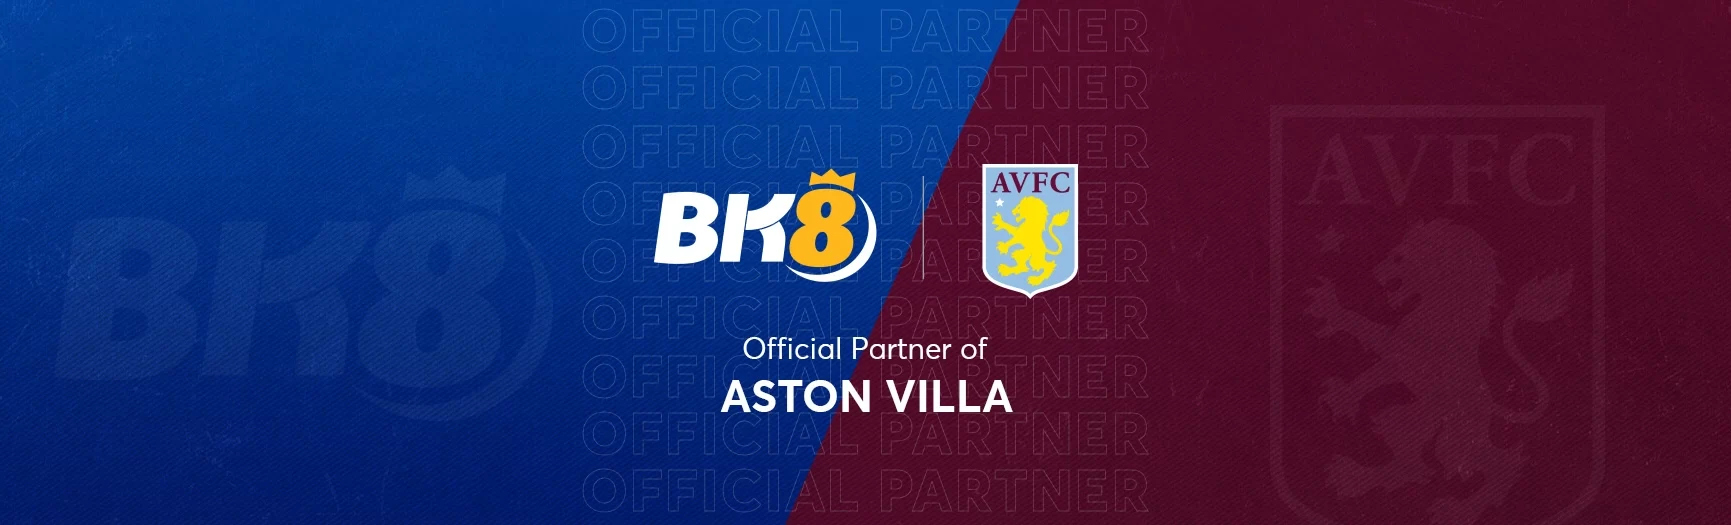 BK8 Official Partner Aston Villa